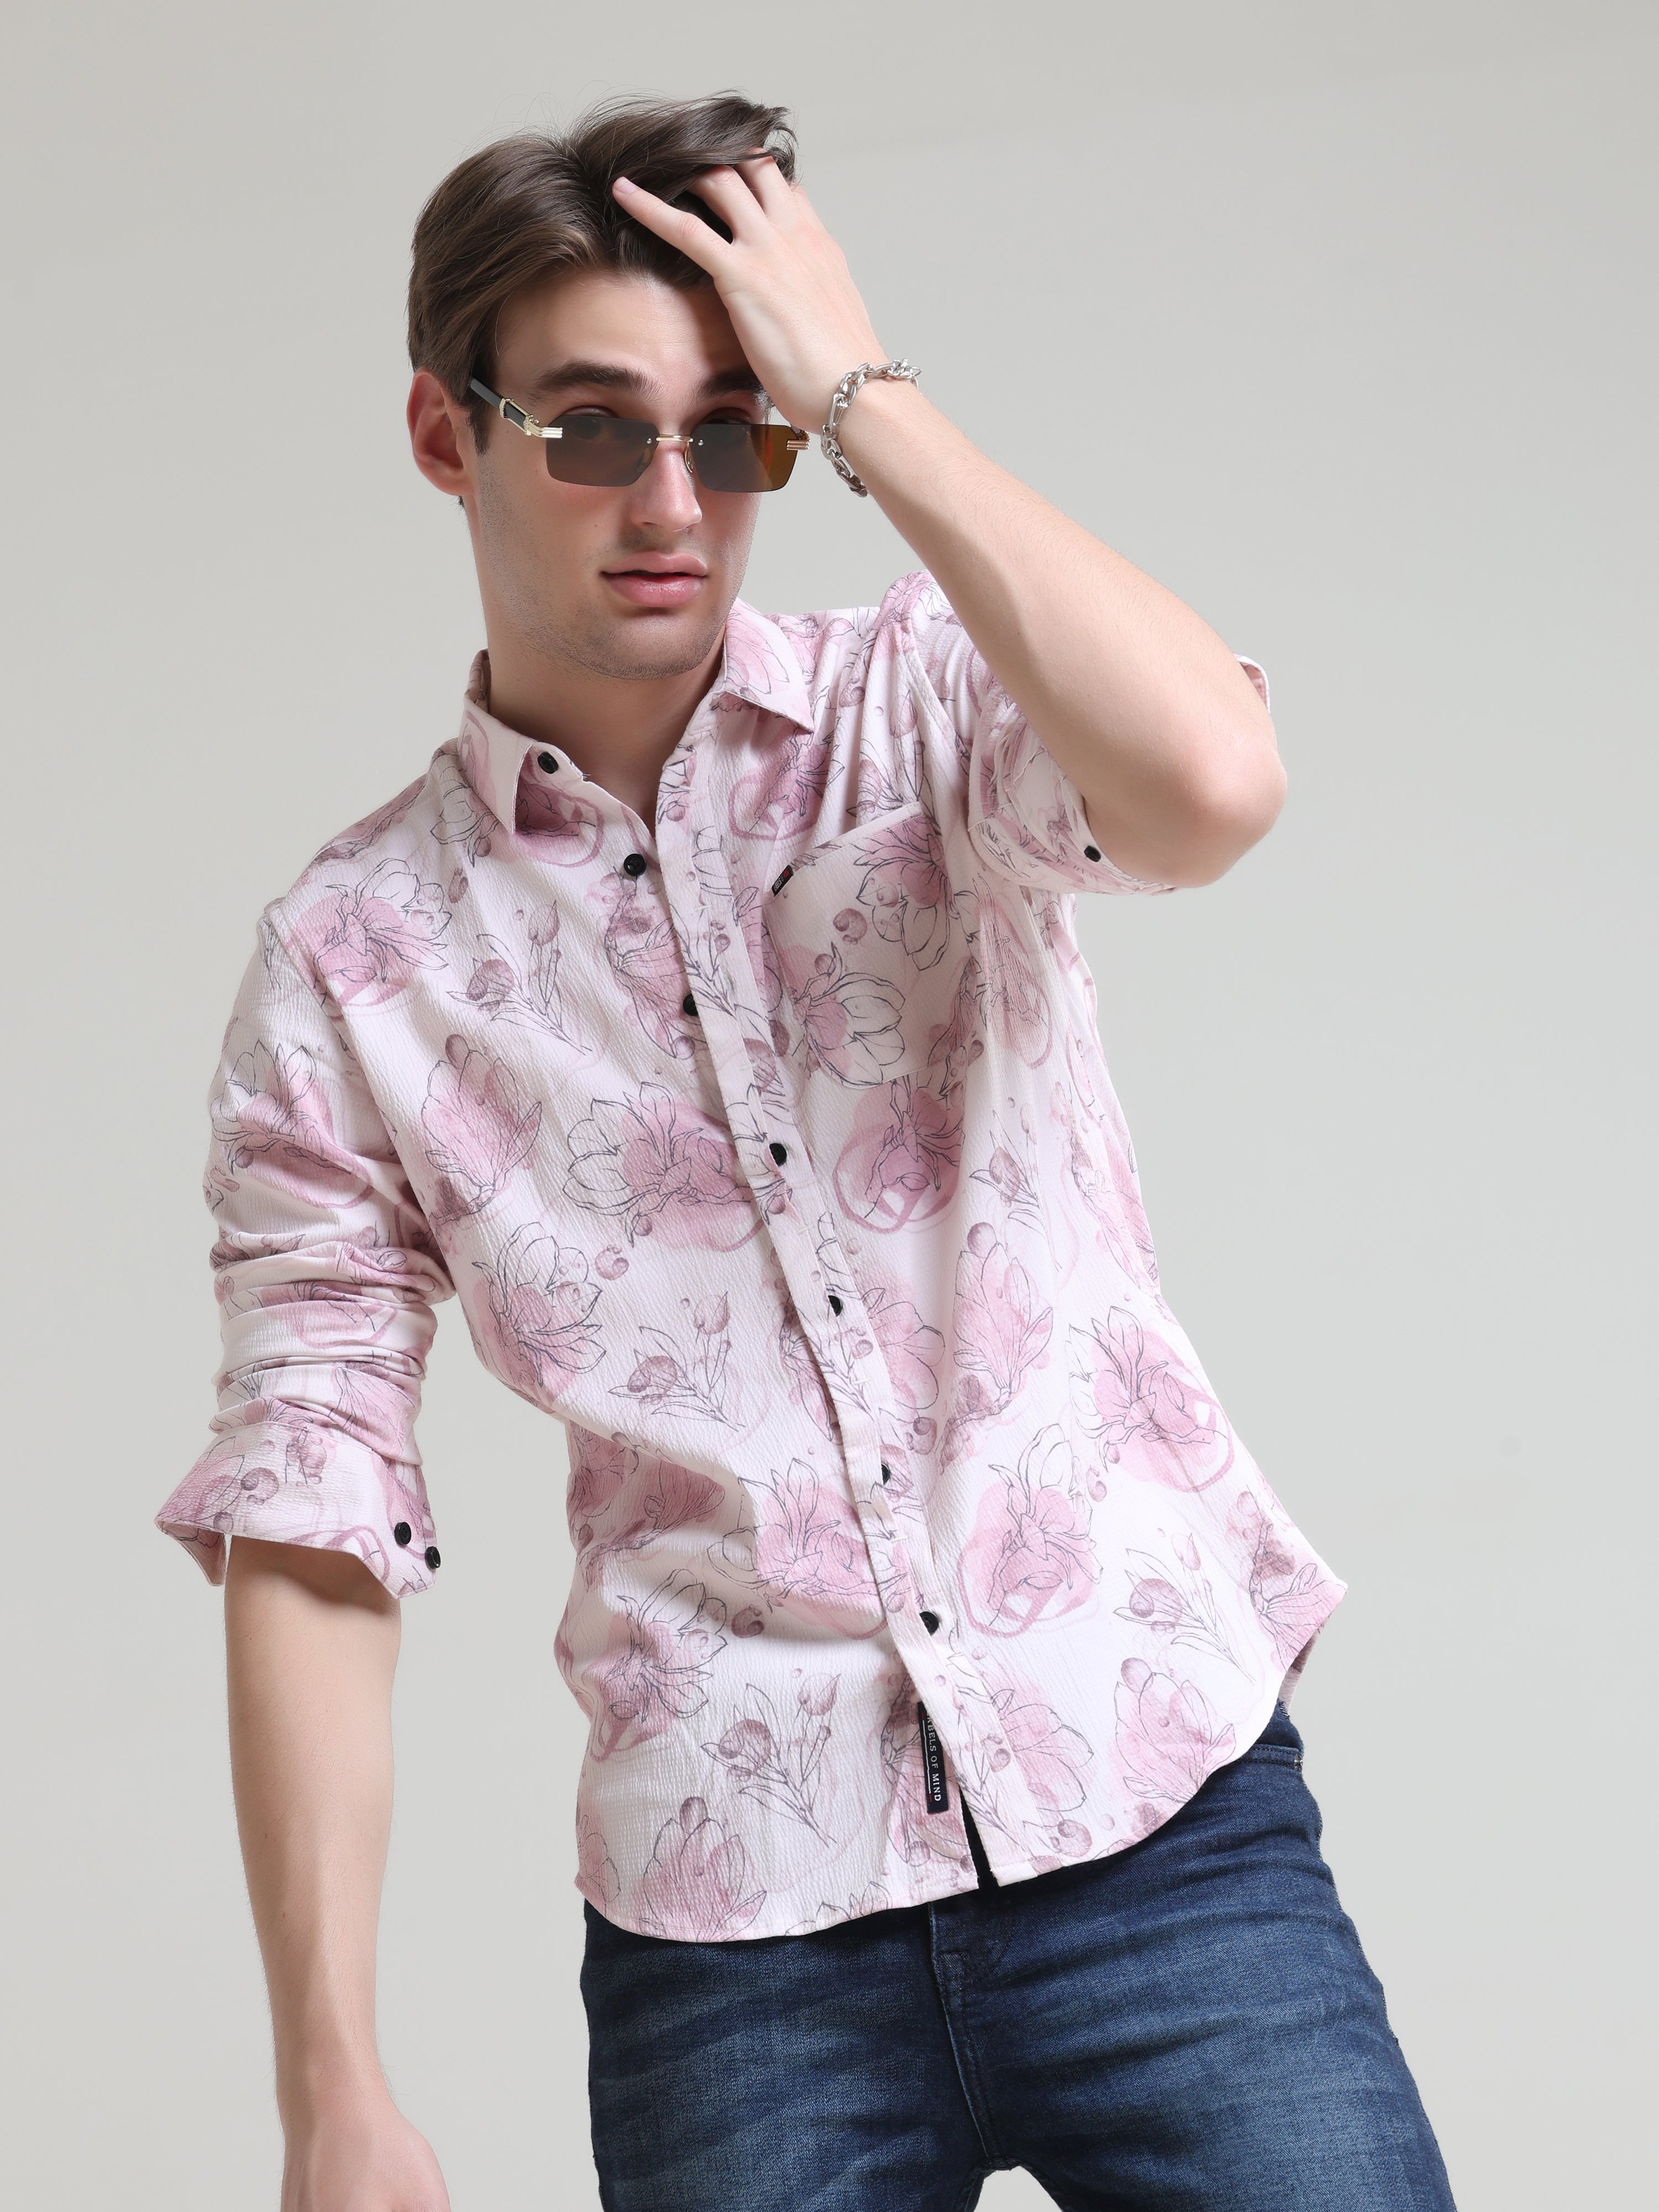 Buy Cool Beige Floral flower printed shirts full sleeves OnlineRs. 1359.00